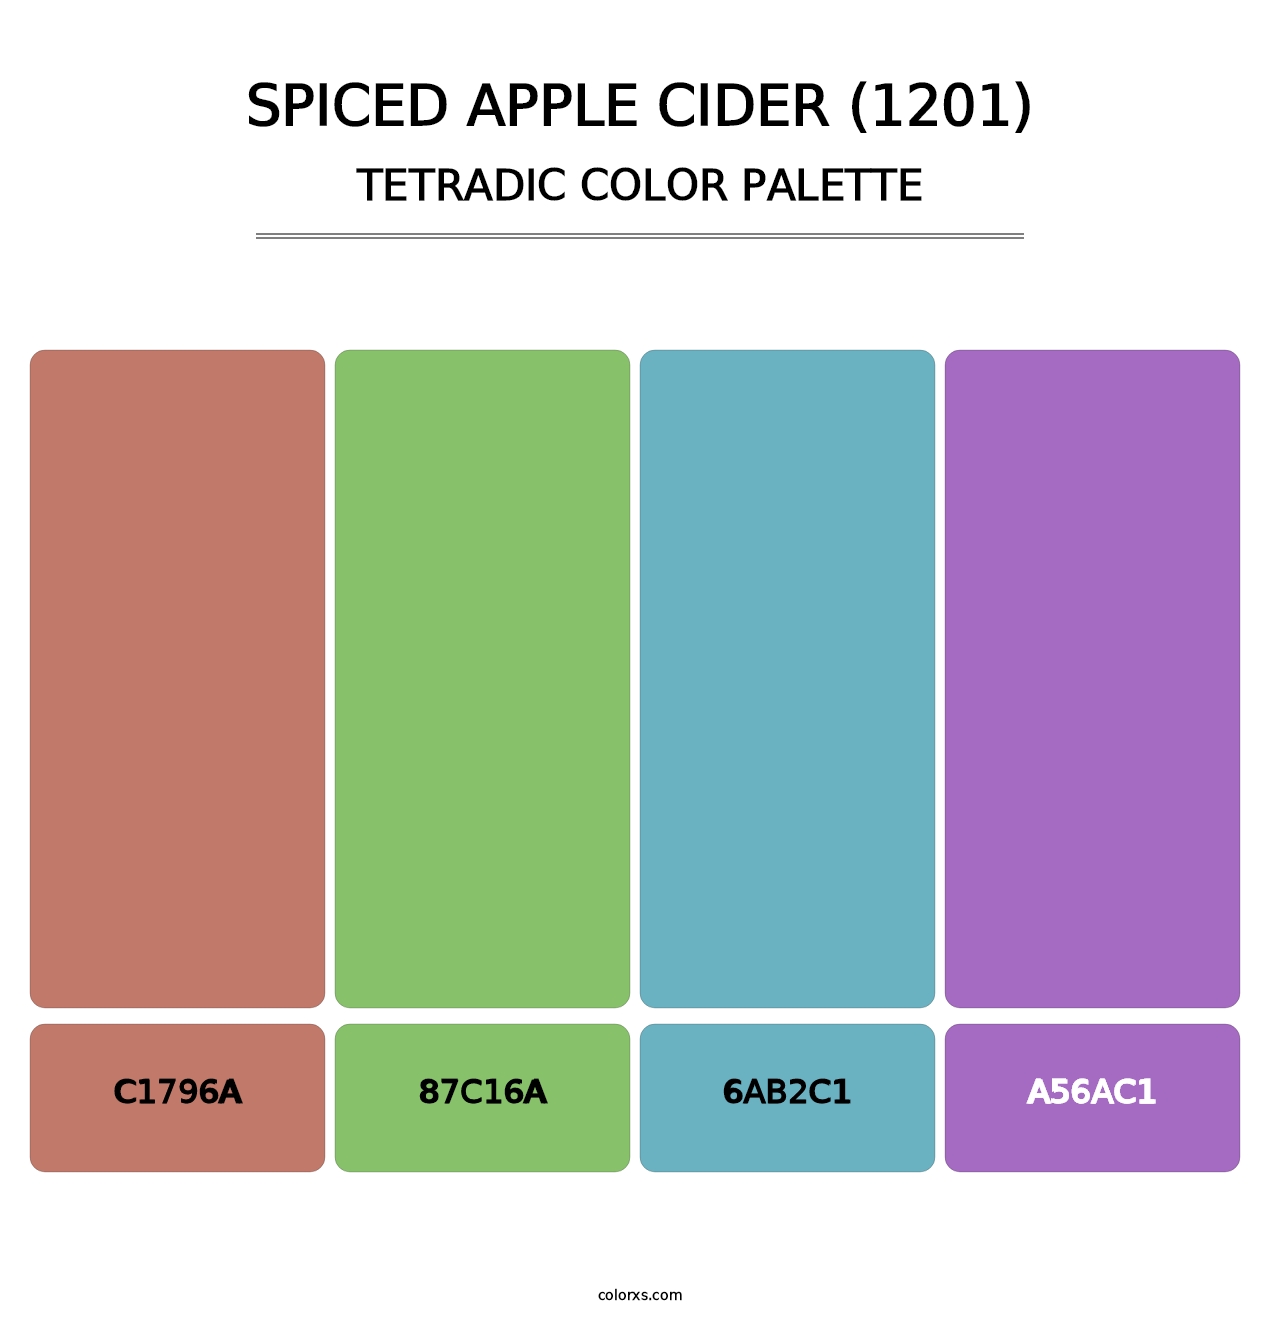 Spiced Apple Cider (1201) - Tetradic Color Palette